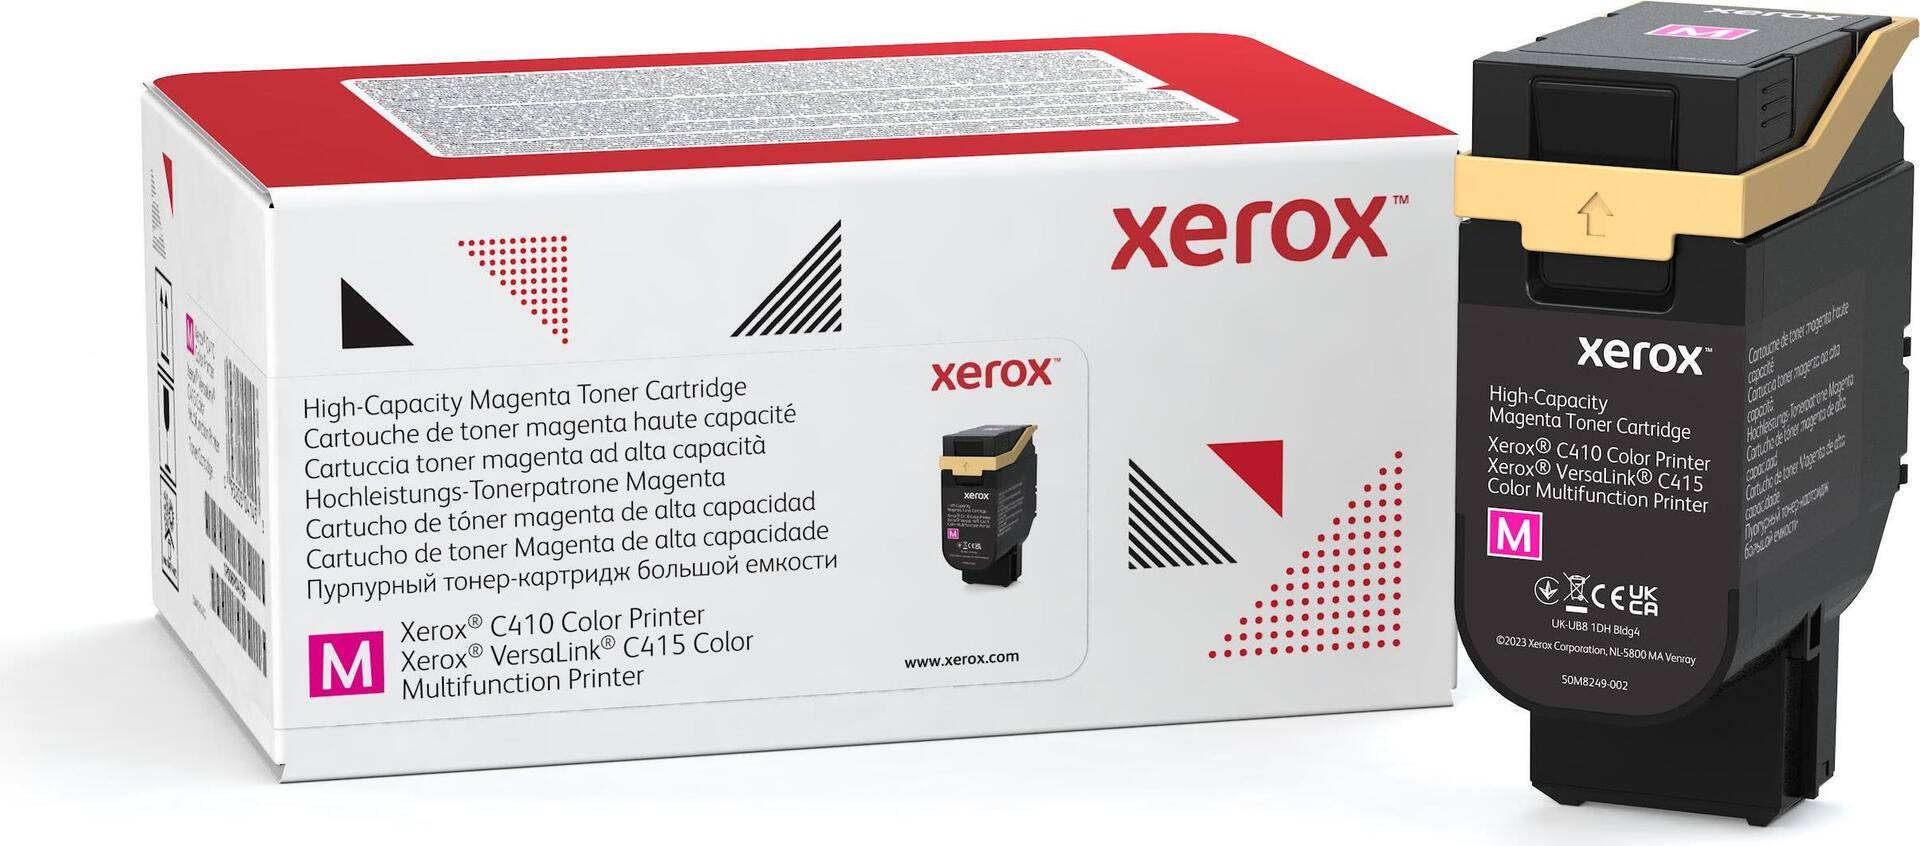 Xerox - Mit hoher Kapazität - Magenta - original - Box - Tonerpatrone Use and Return - für Xerox C410, VersaLink C415/DN von Xerox